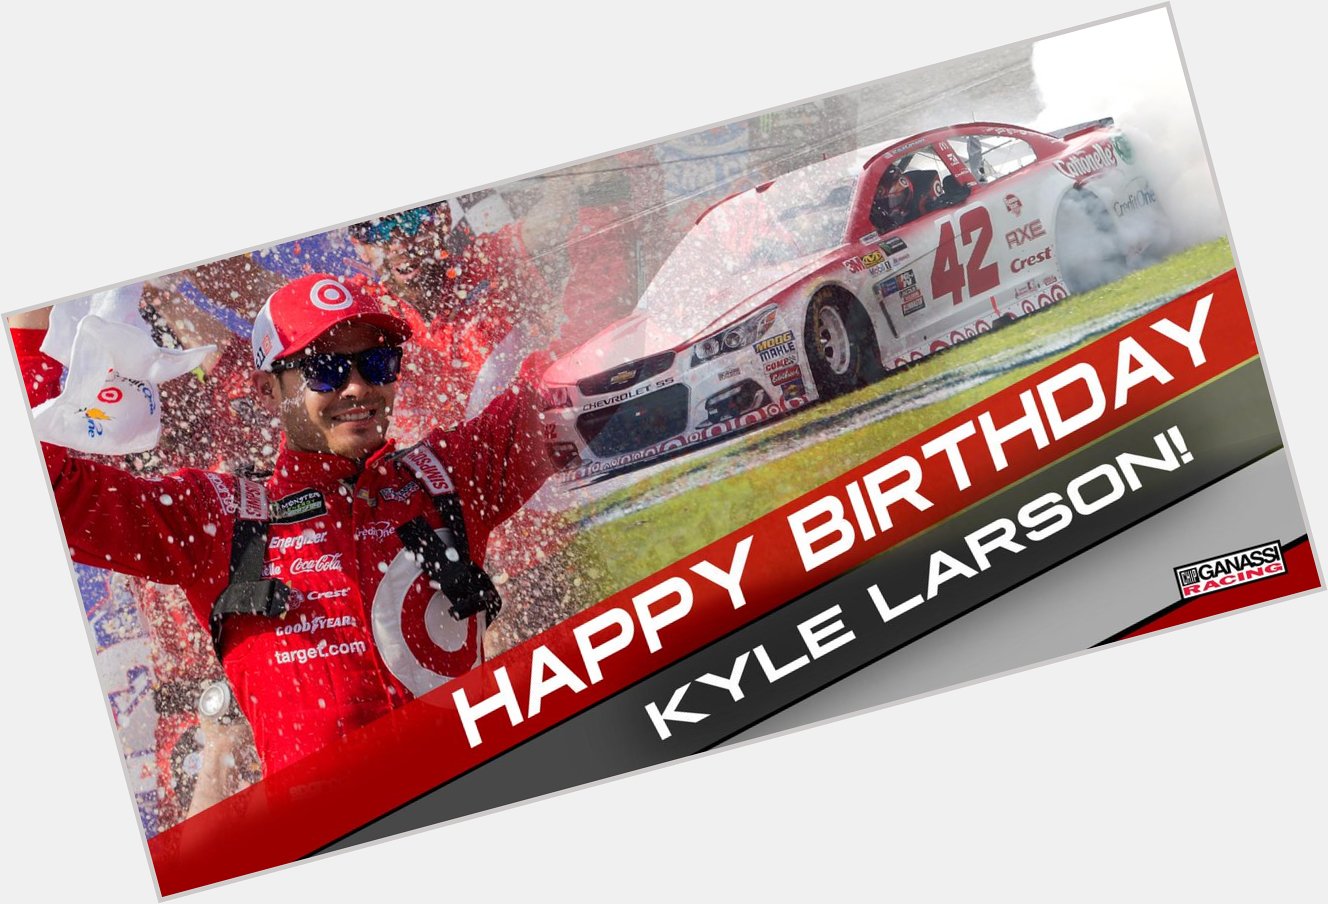 Happy birthday to Kyle Larson 